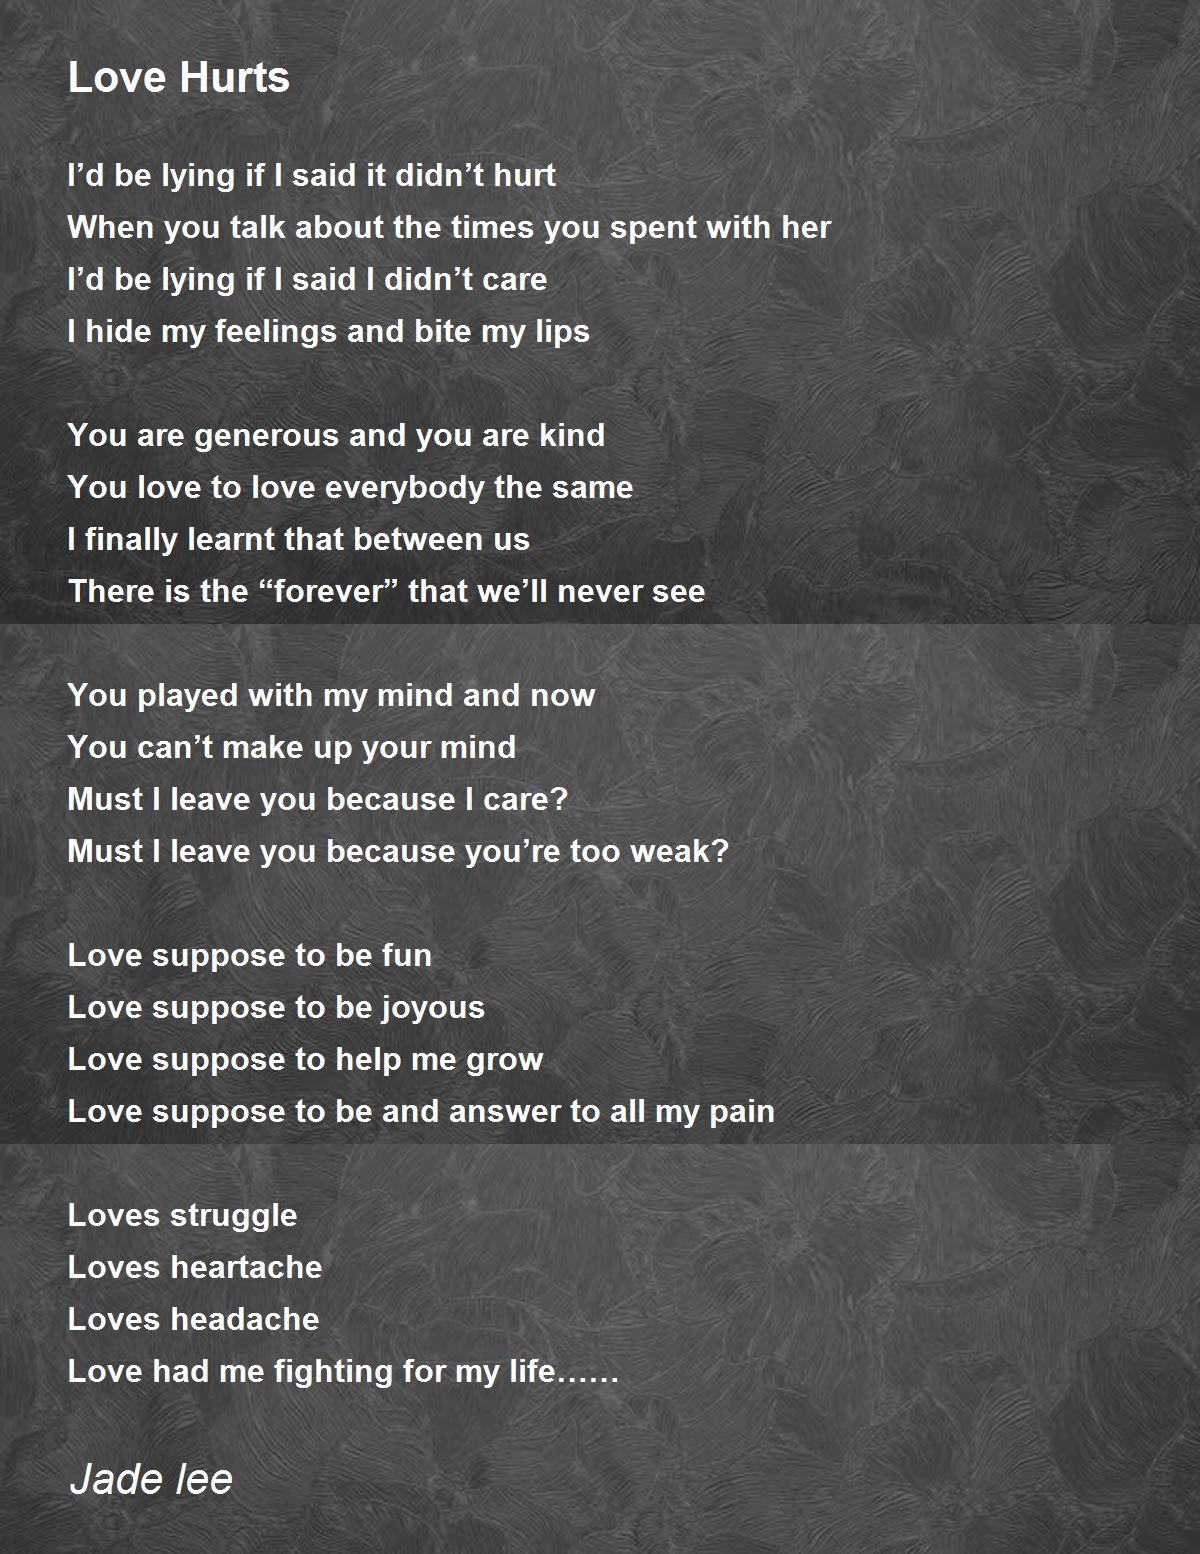 Love Hurts - Love Hurts Poem by Jade lee